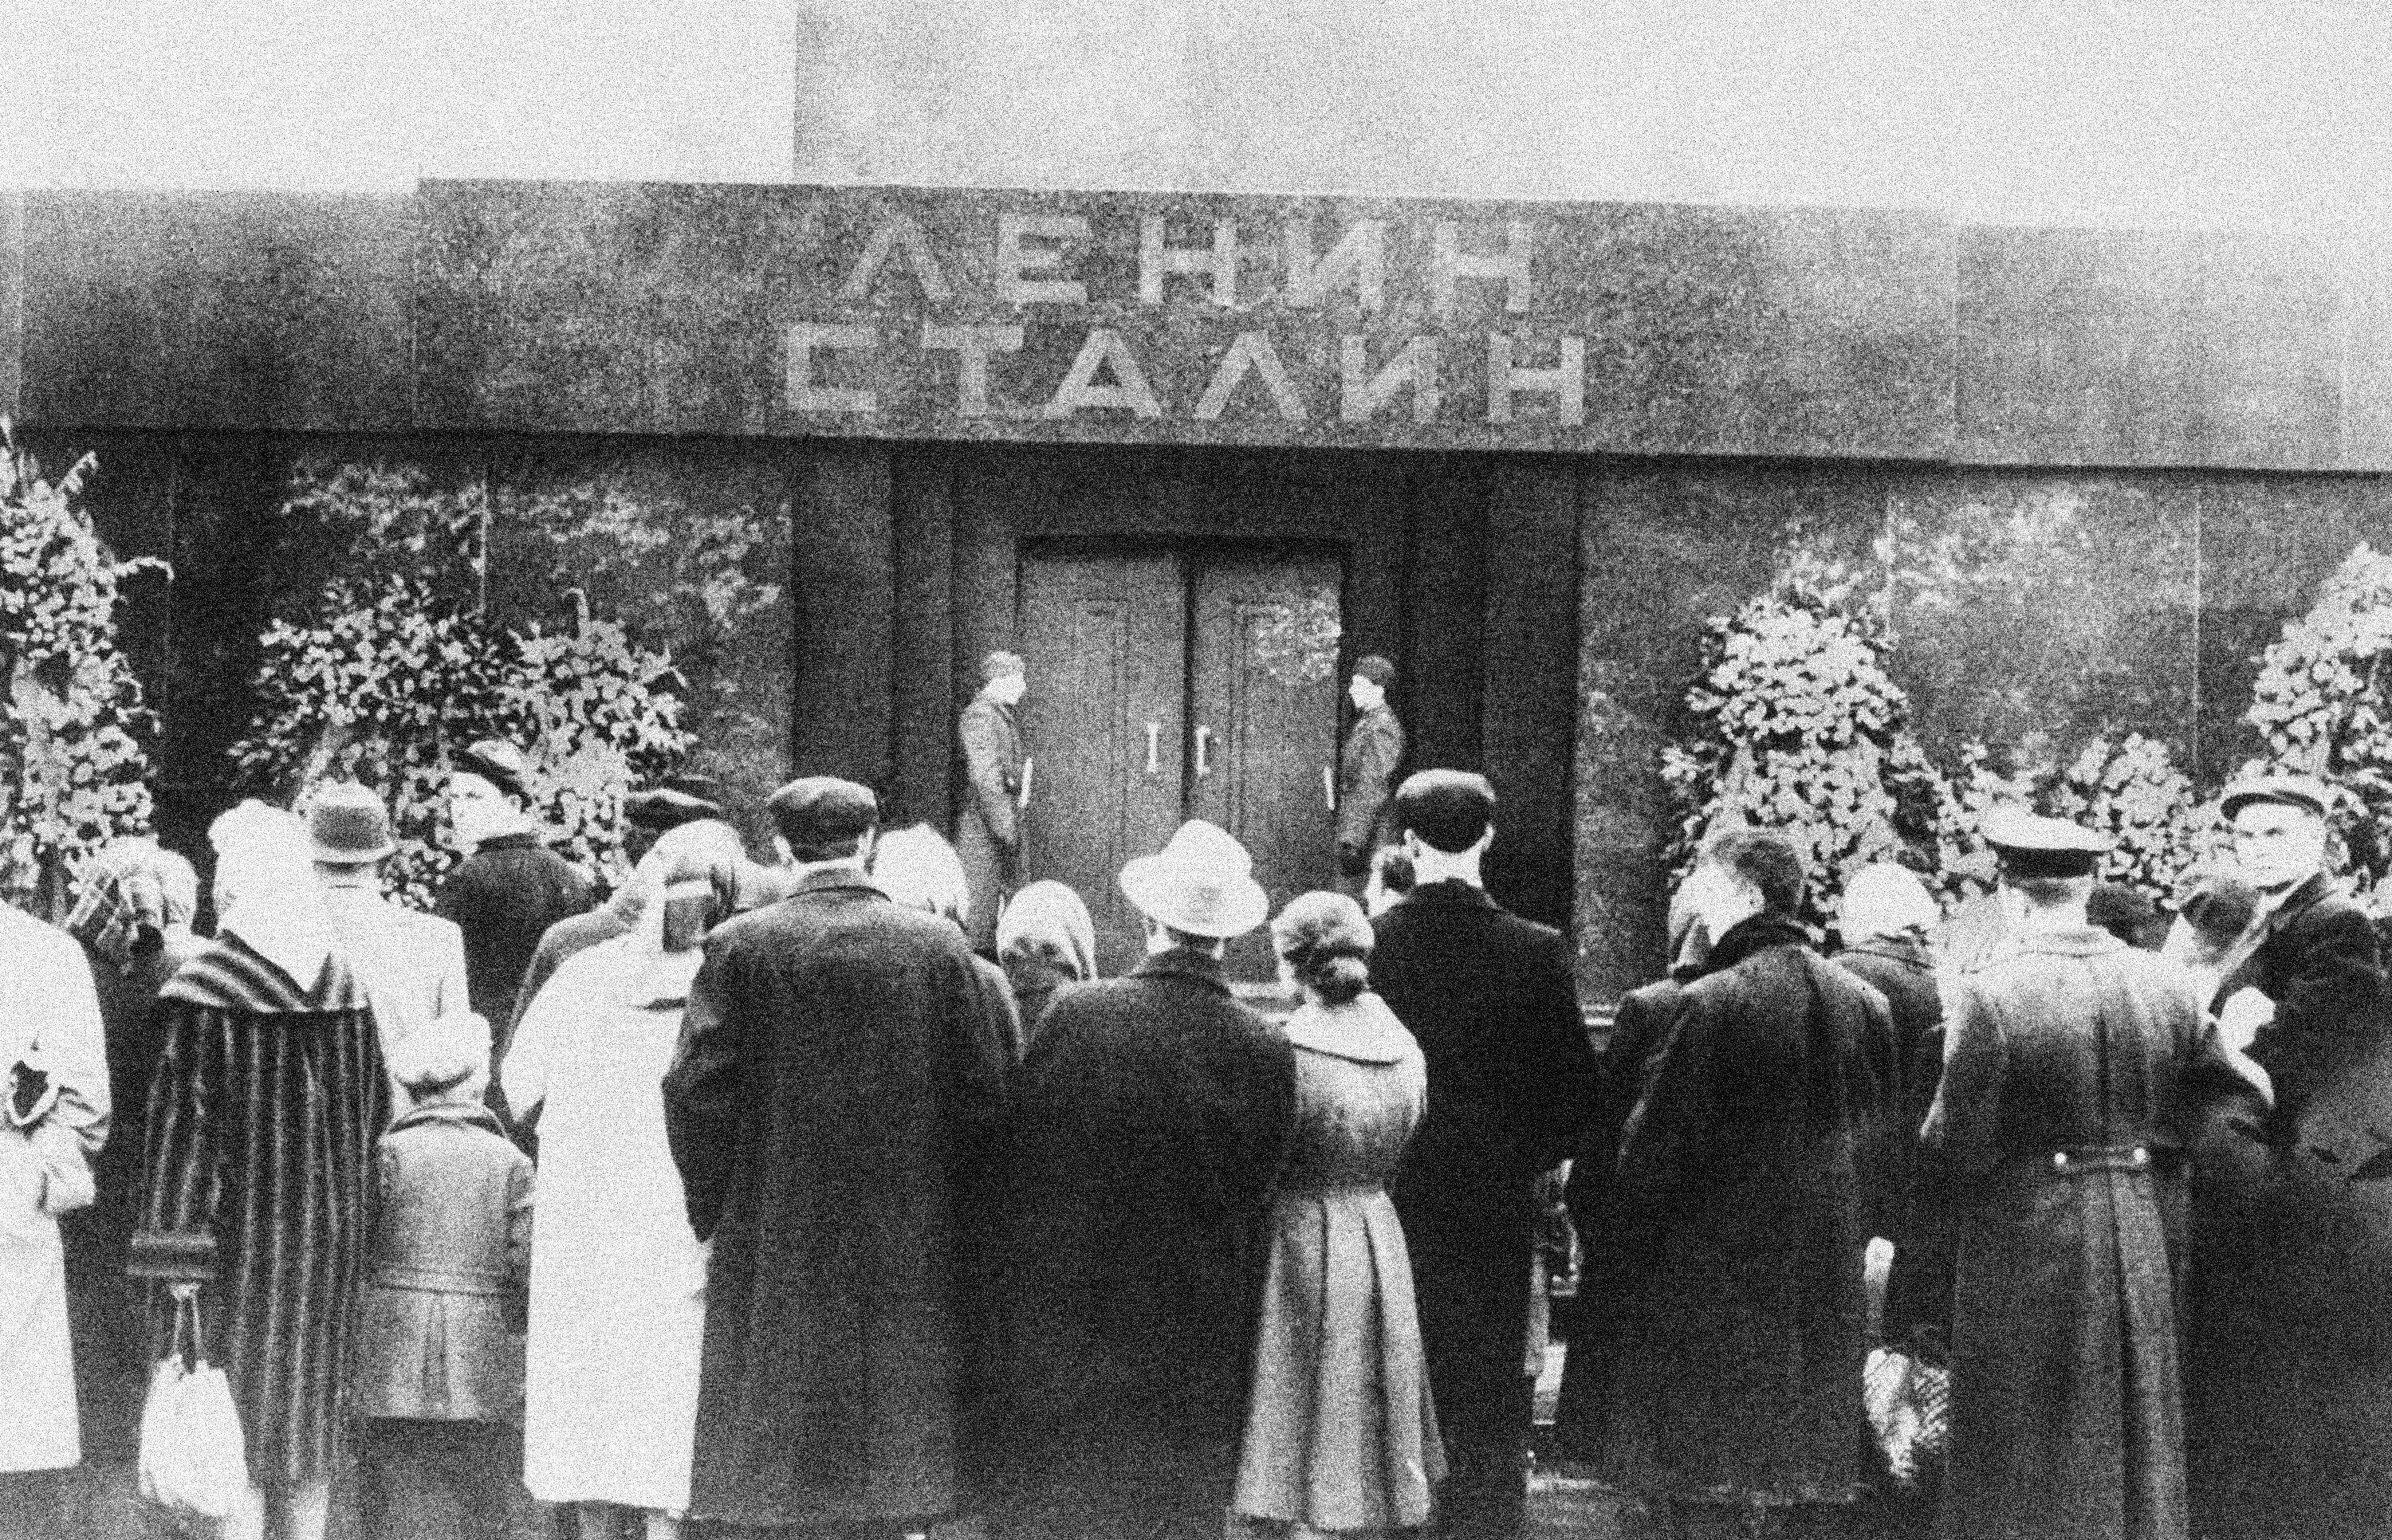 Coloso caído: el terror de la URSS, los triunfos comenzaron hace 100 años